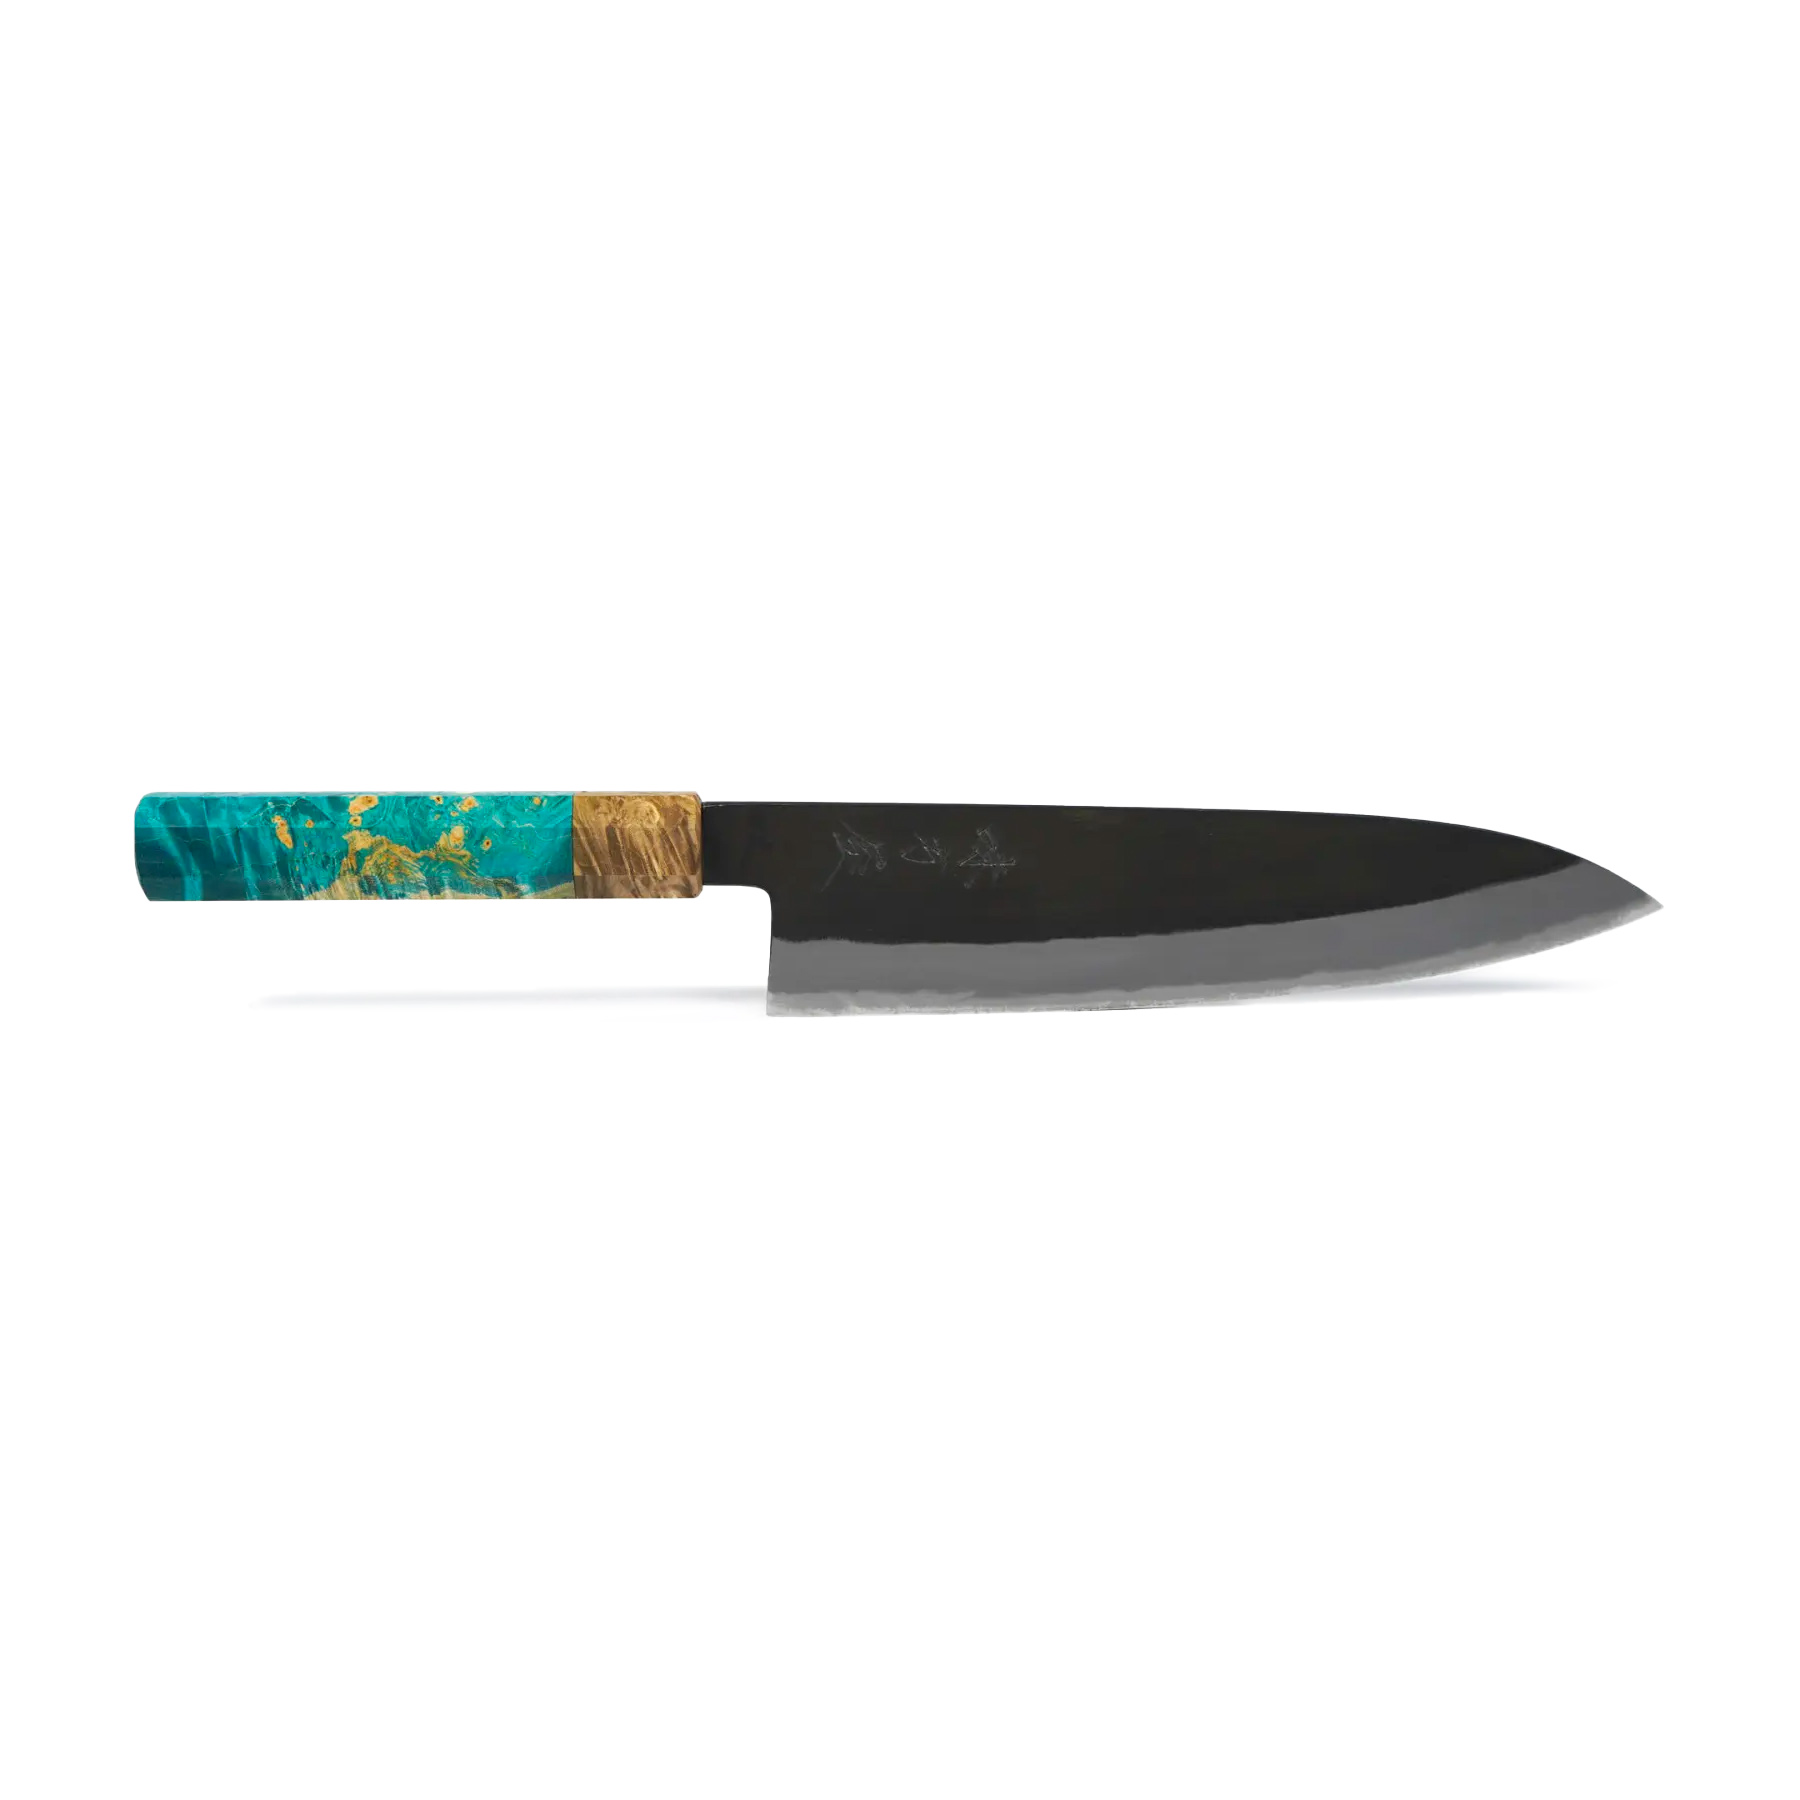 Mutsumi Hinoura Shirogami Kurouchi – Chef’s Knife 21cm – The Gyuto